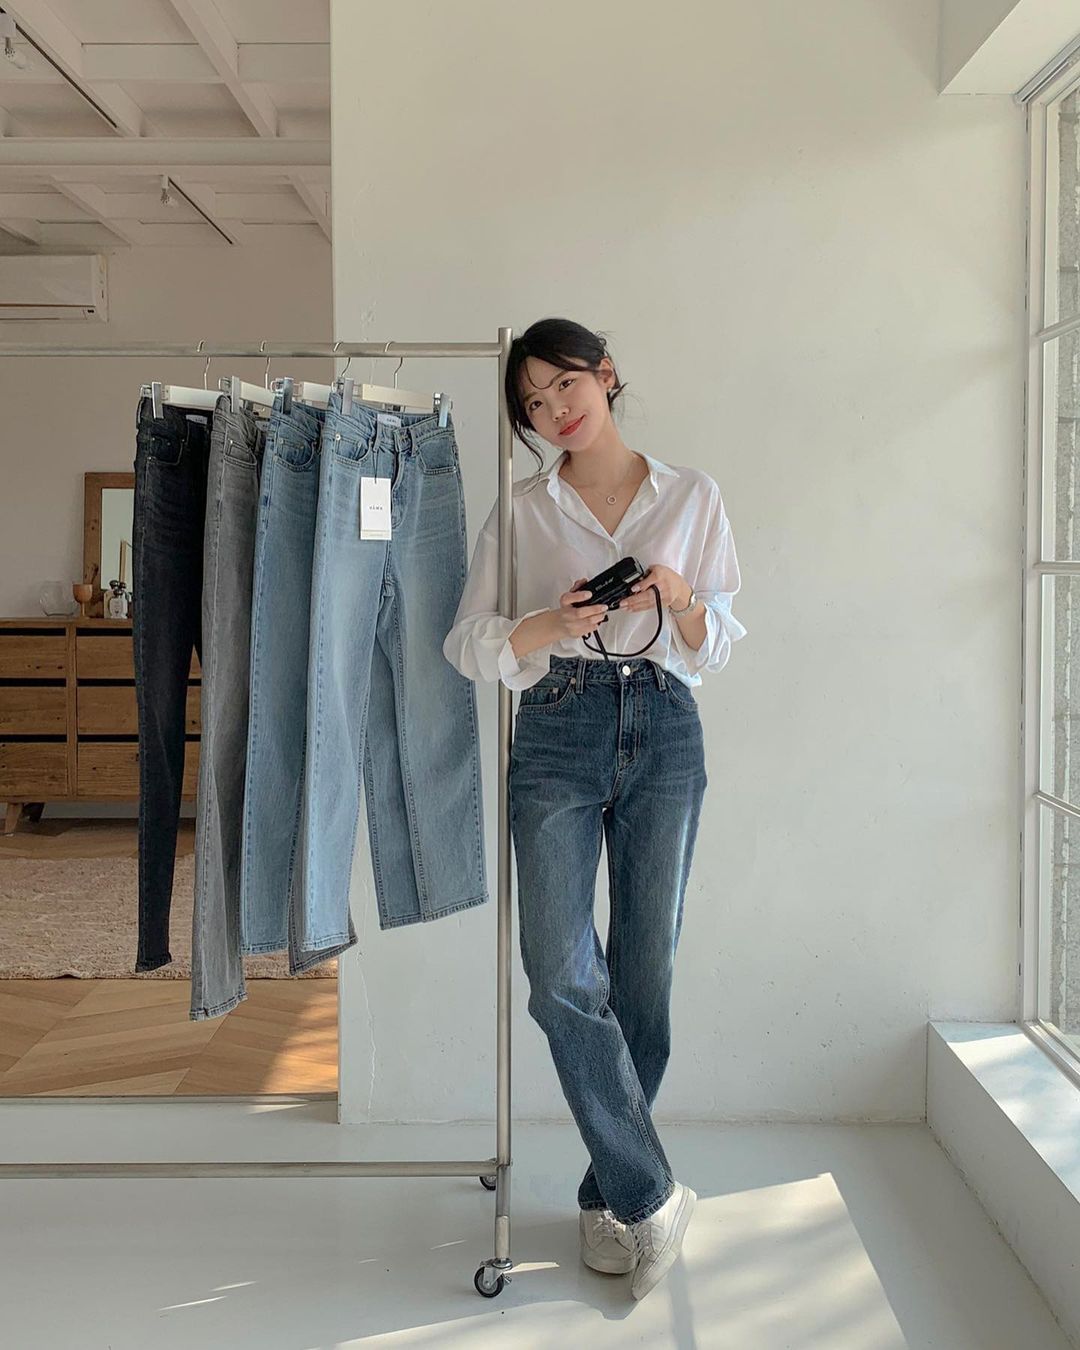 Học nàng blogger Hàn cách diện jeans “đỉnh của chóp”: Vừa hack dáng vừa thanh lịch để đến sở làm - Ảnh 4